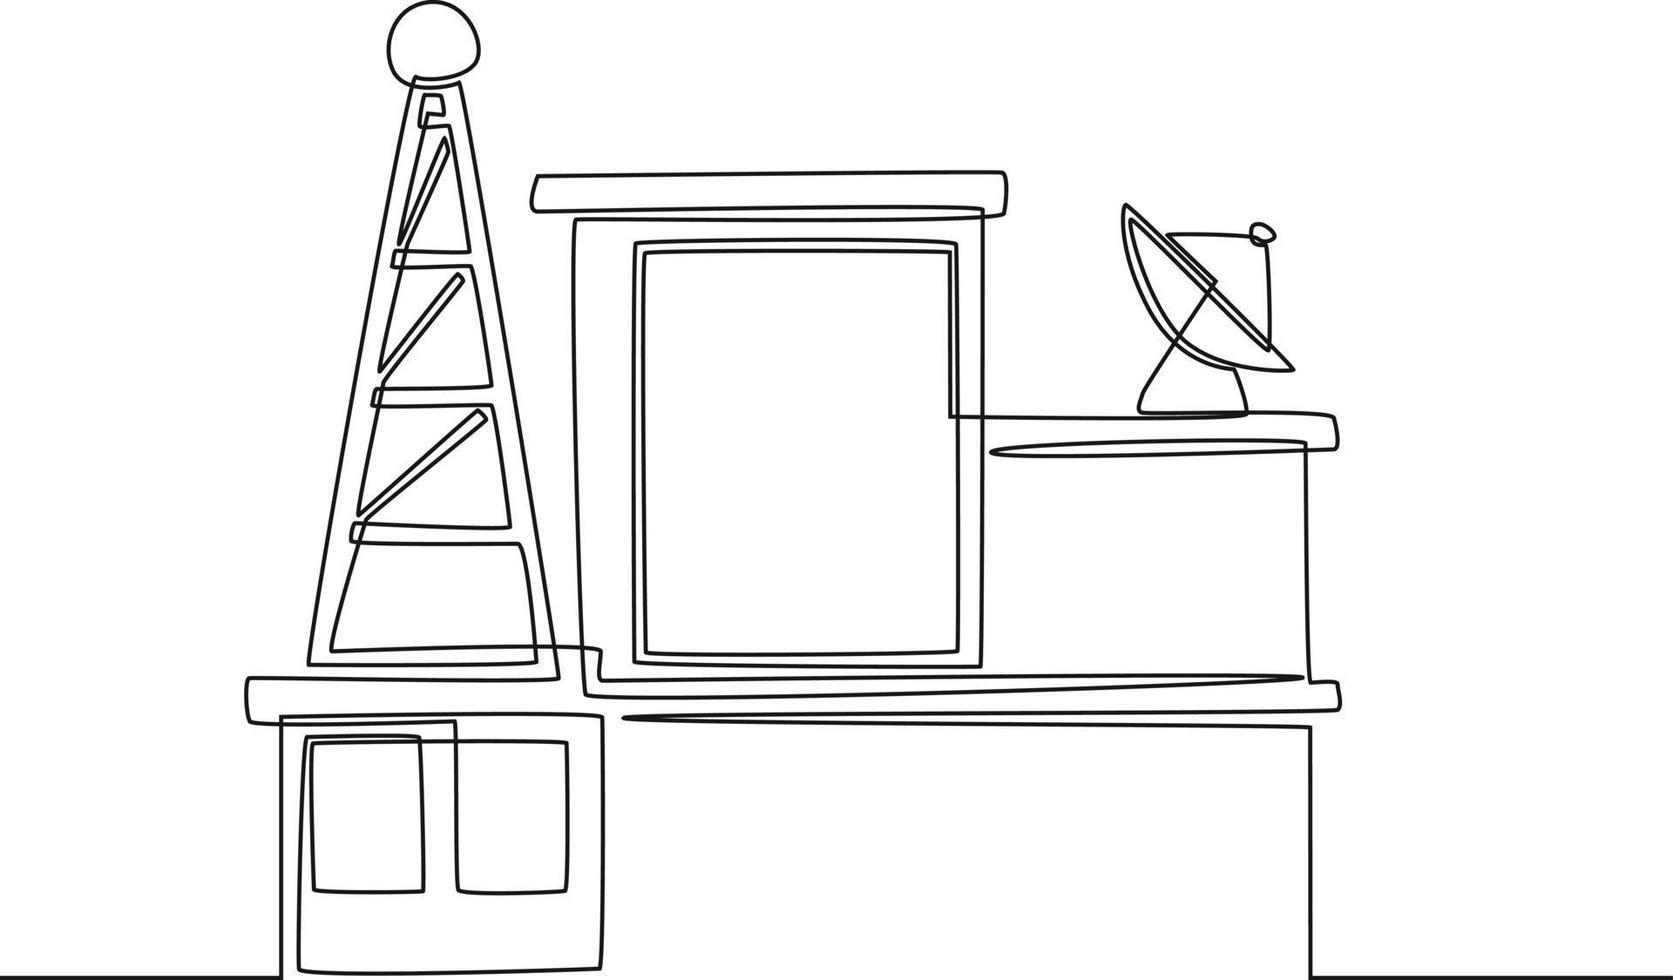 torre de telecomunicaciones de dibujo de línea continua única y antena parabólica en el edificio. ilustración de vector de diseño gráfico de dibujo de una línea.